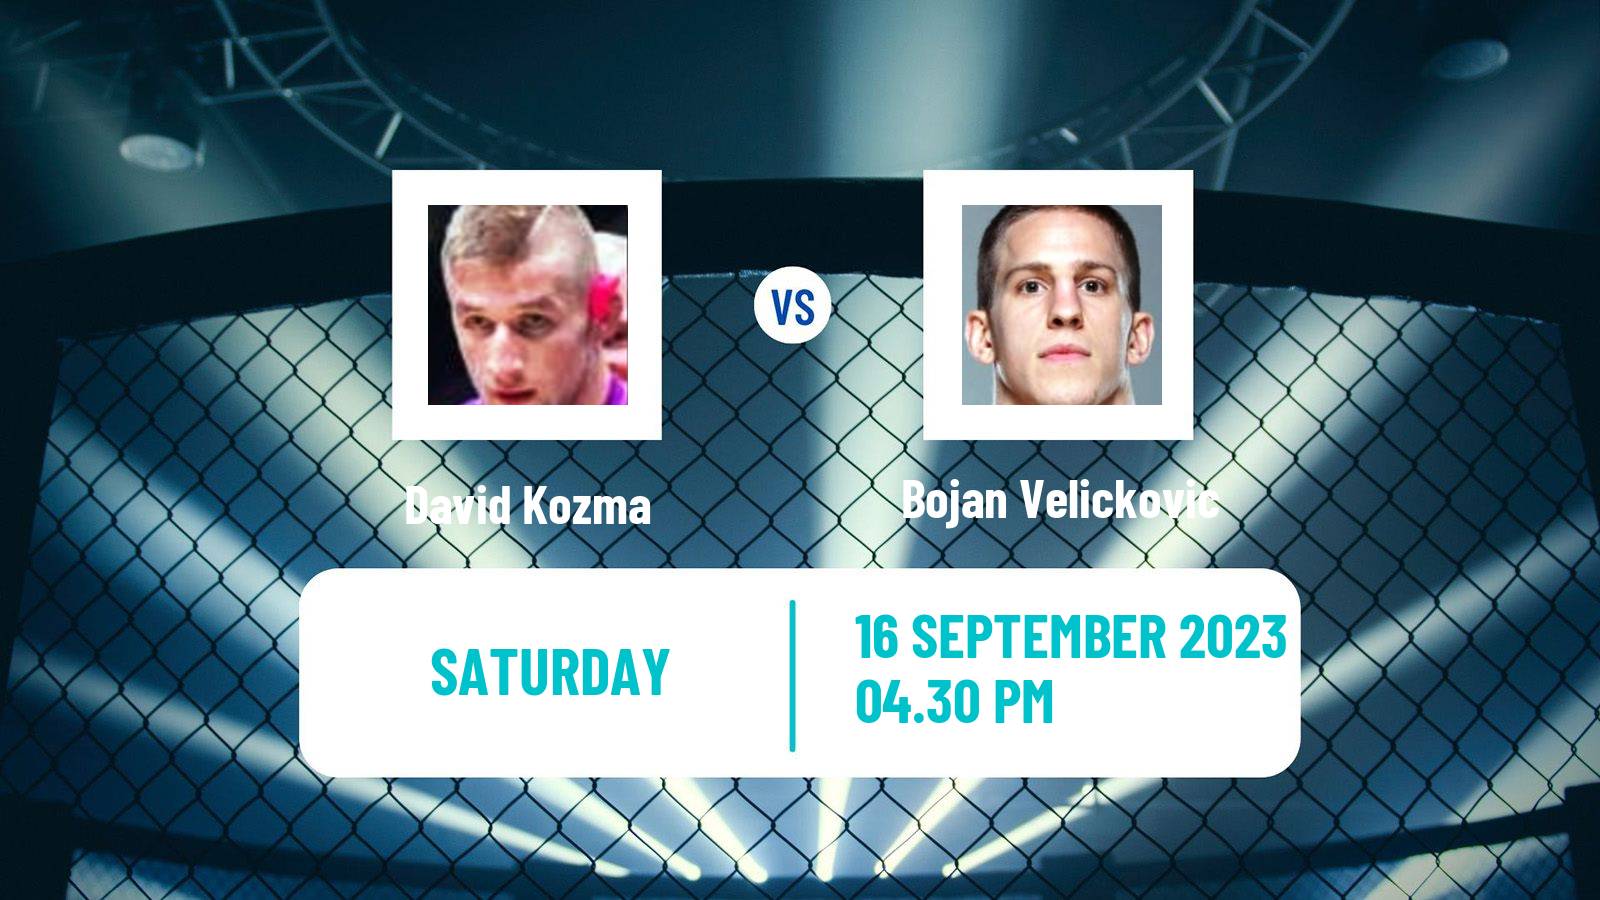 MMA Welterweight Oktagon Gamechanger Men David Kozma - Bojan Velickovic